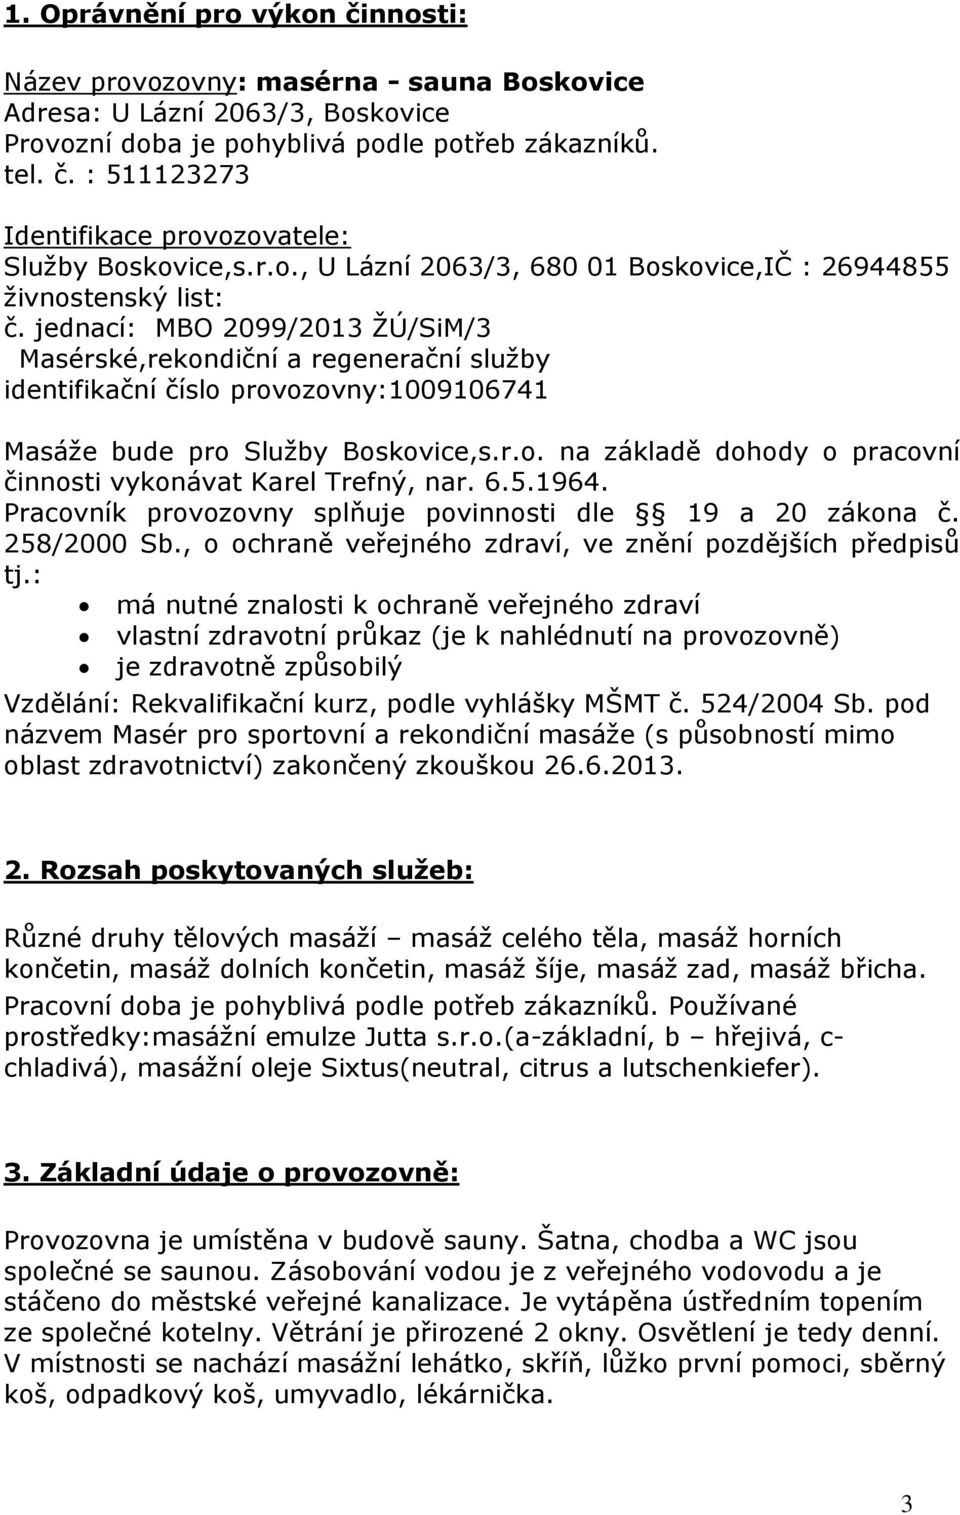 PROVOZNÍ ŘÁD MASÉRNY v Boskovicích - PDF Stažení zdarma